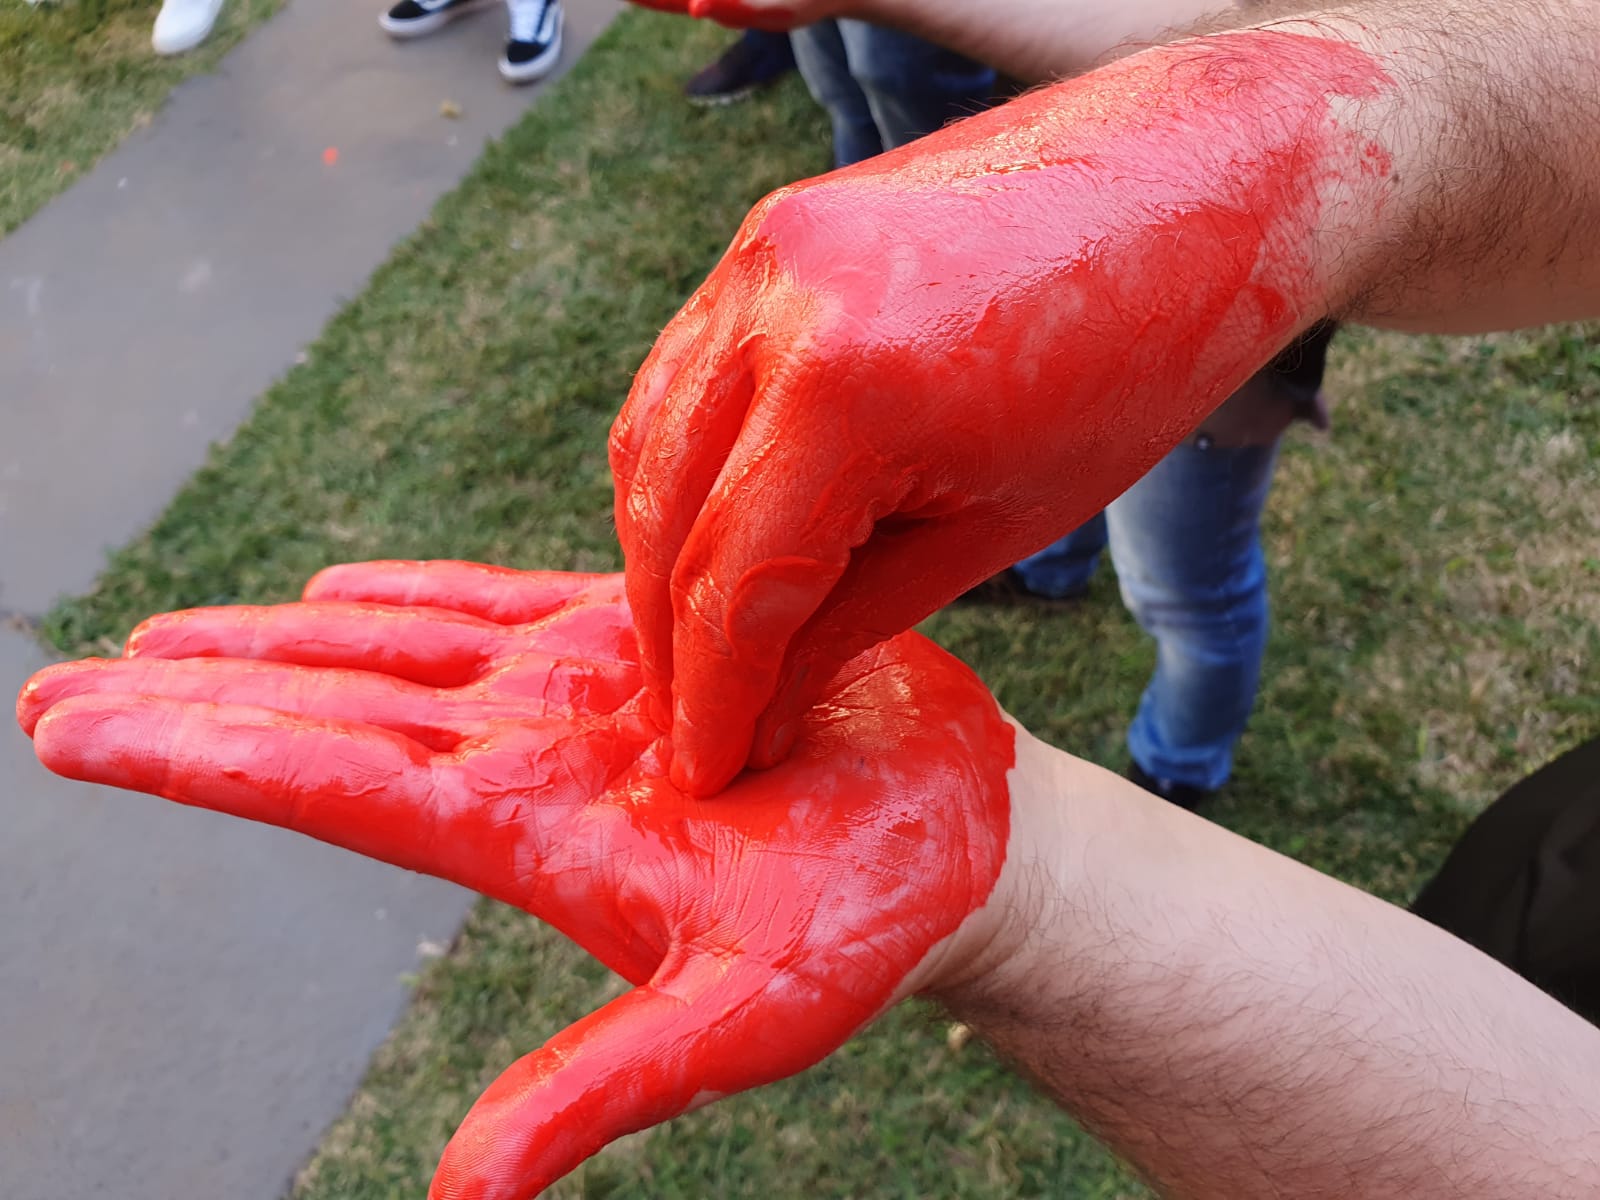 Calouros da 19ª turma de medicina FACERES têm aula sobre higienização das mãos – a tradicional foto das mãos vermelhas